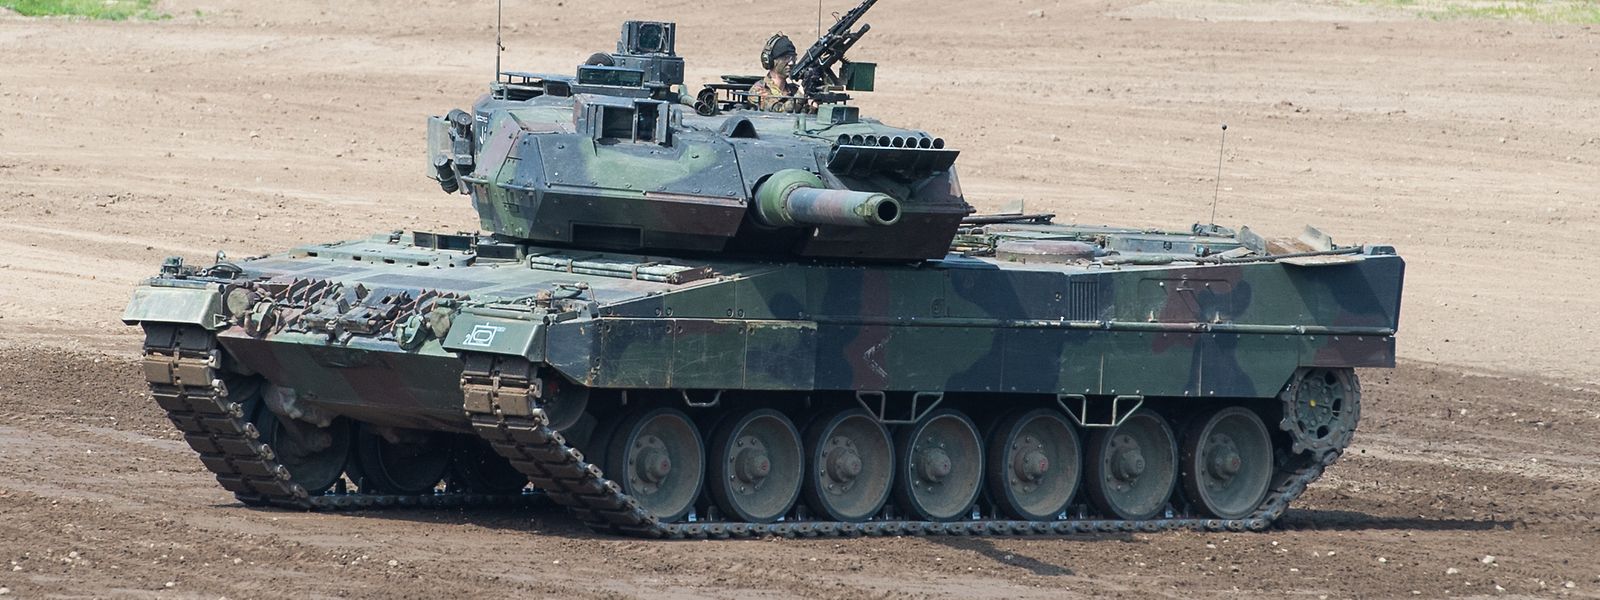 Wie geht es mit der Lieferung deutscher Panzer vom Typ Leopard-2 an die Ukraine weiter? Diese Frage dominiert derzeit die politische Diskussion in Europa.